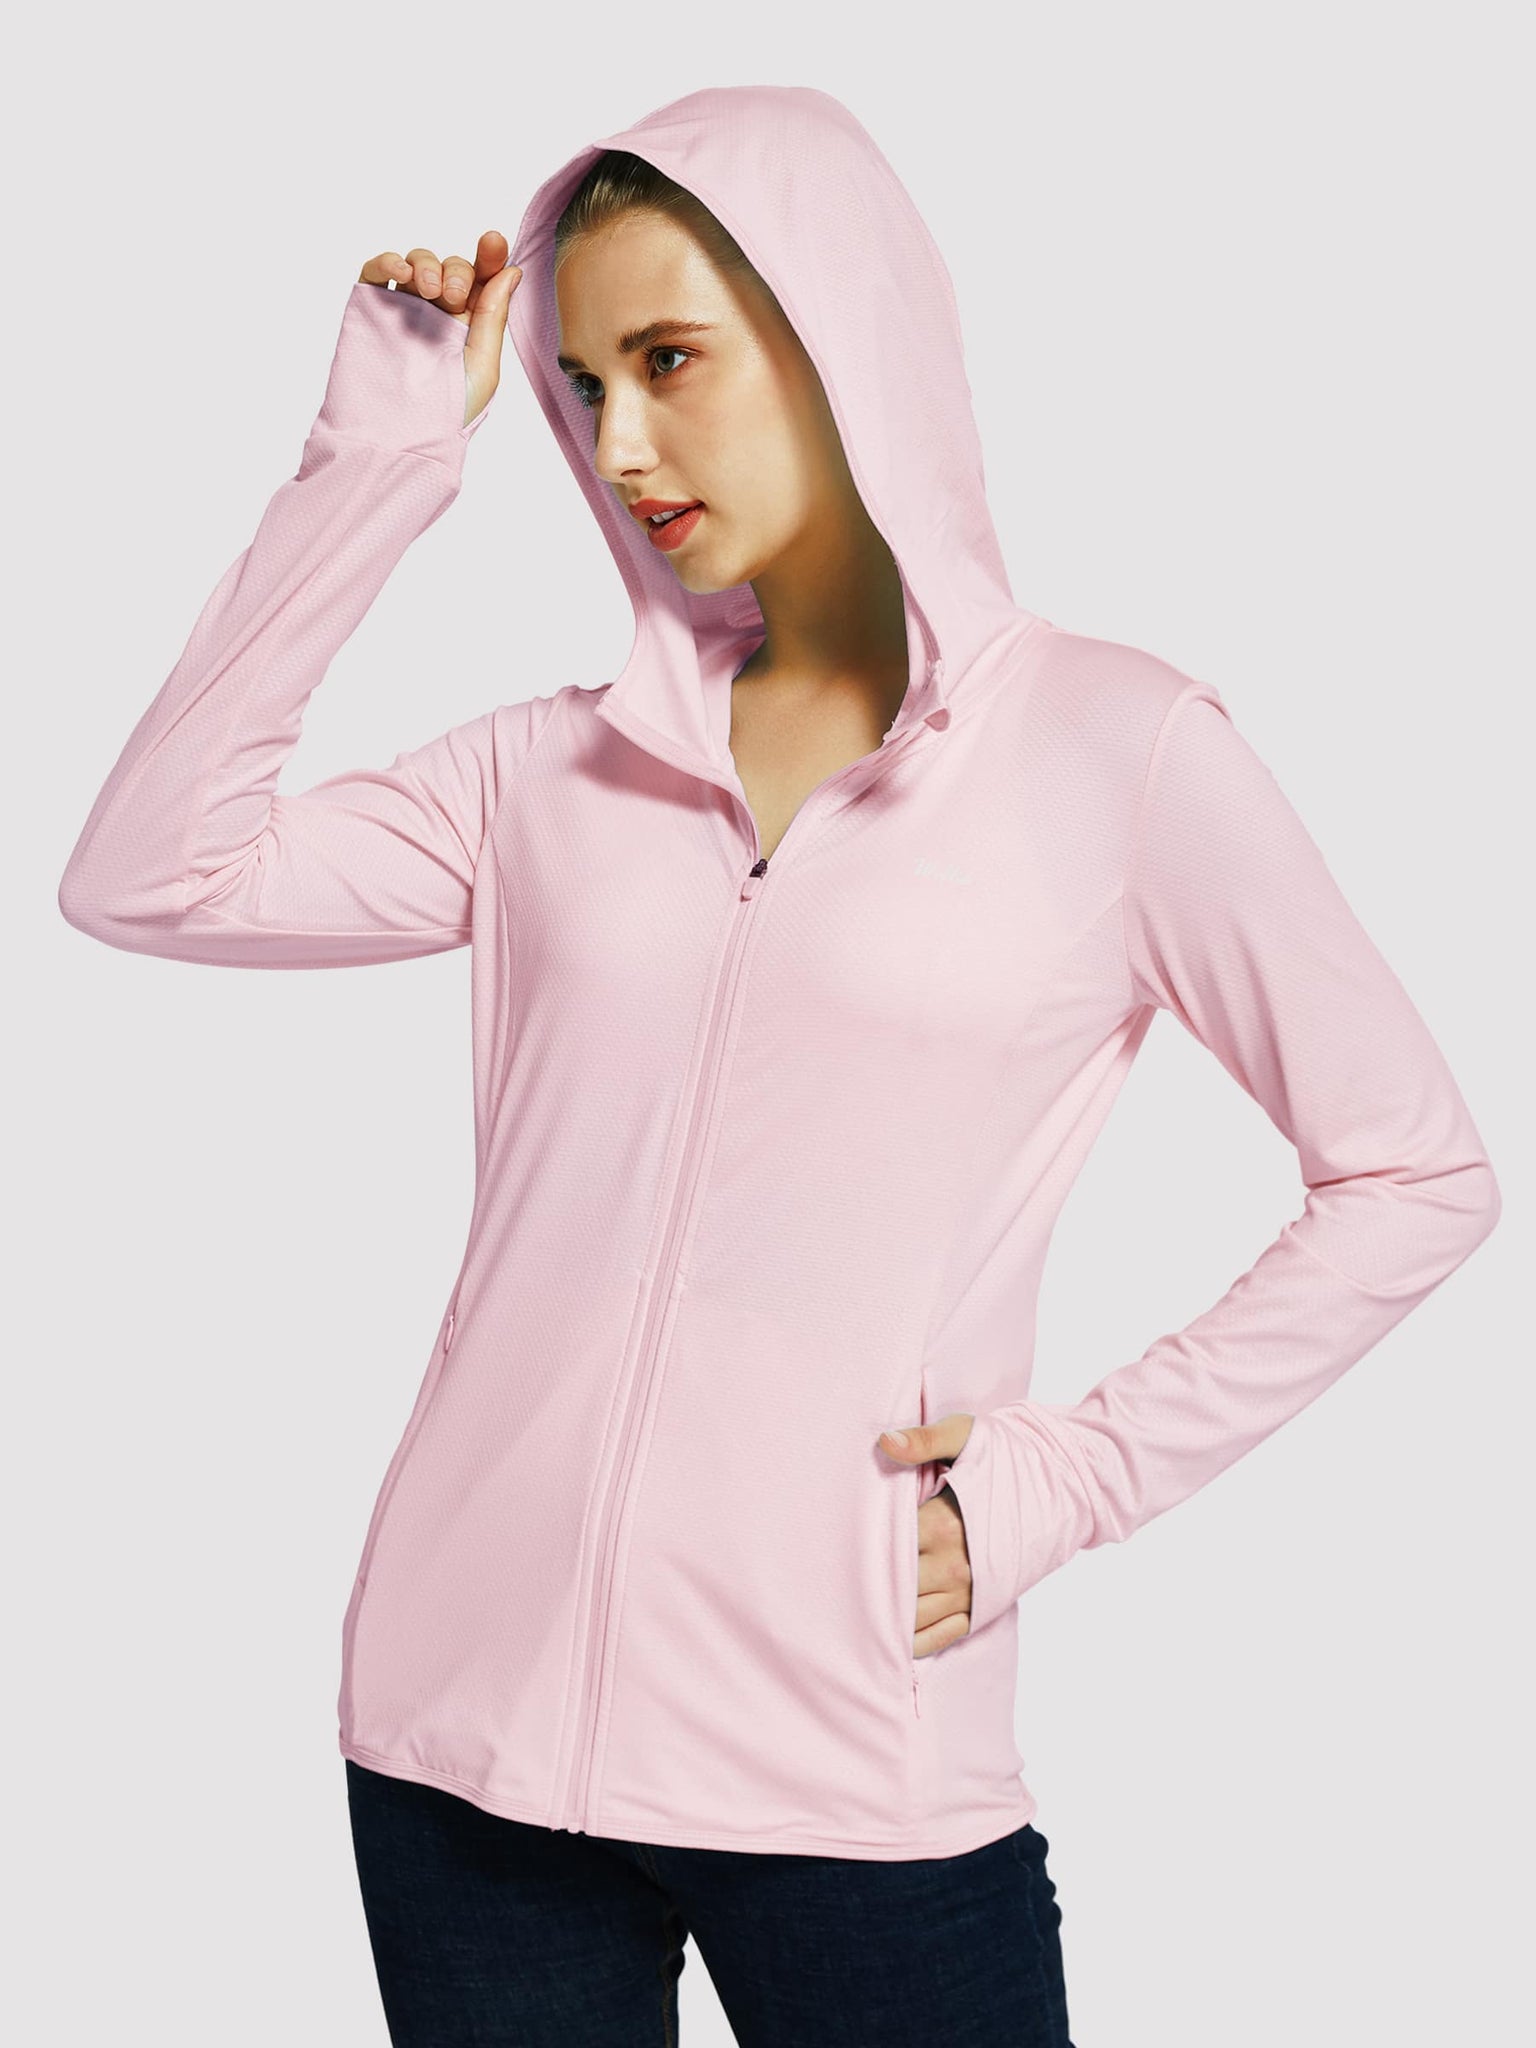 Willit Women's Outdoor Sun Protection Jacket Full Zip_Pink_model1